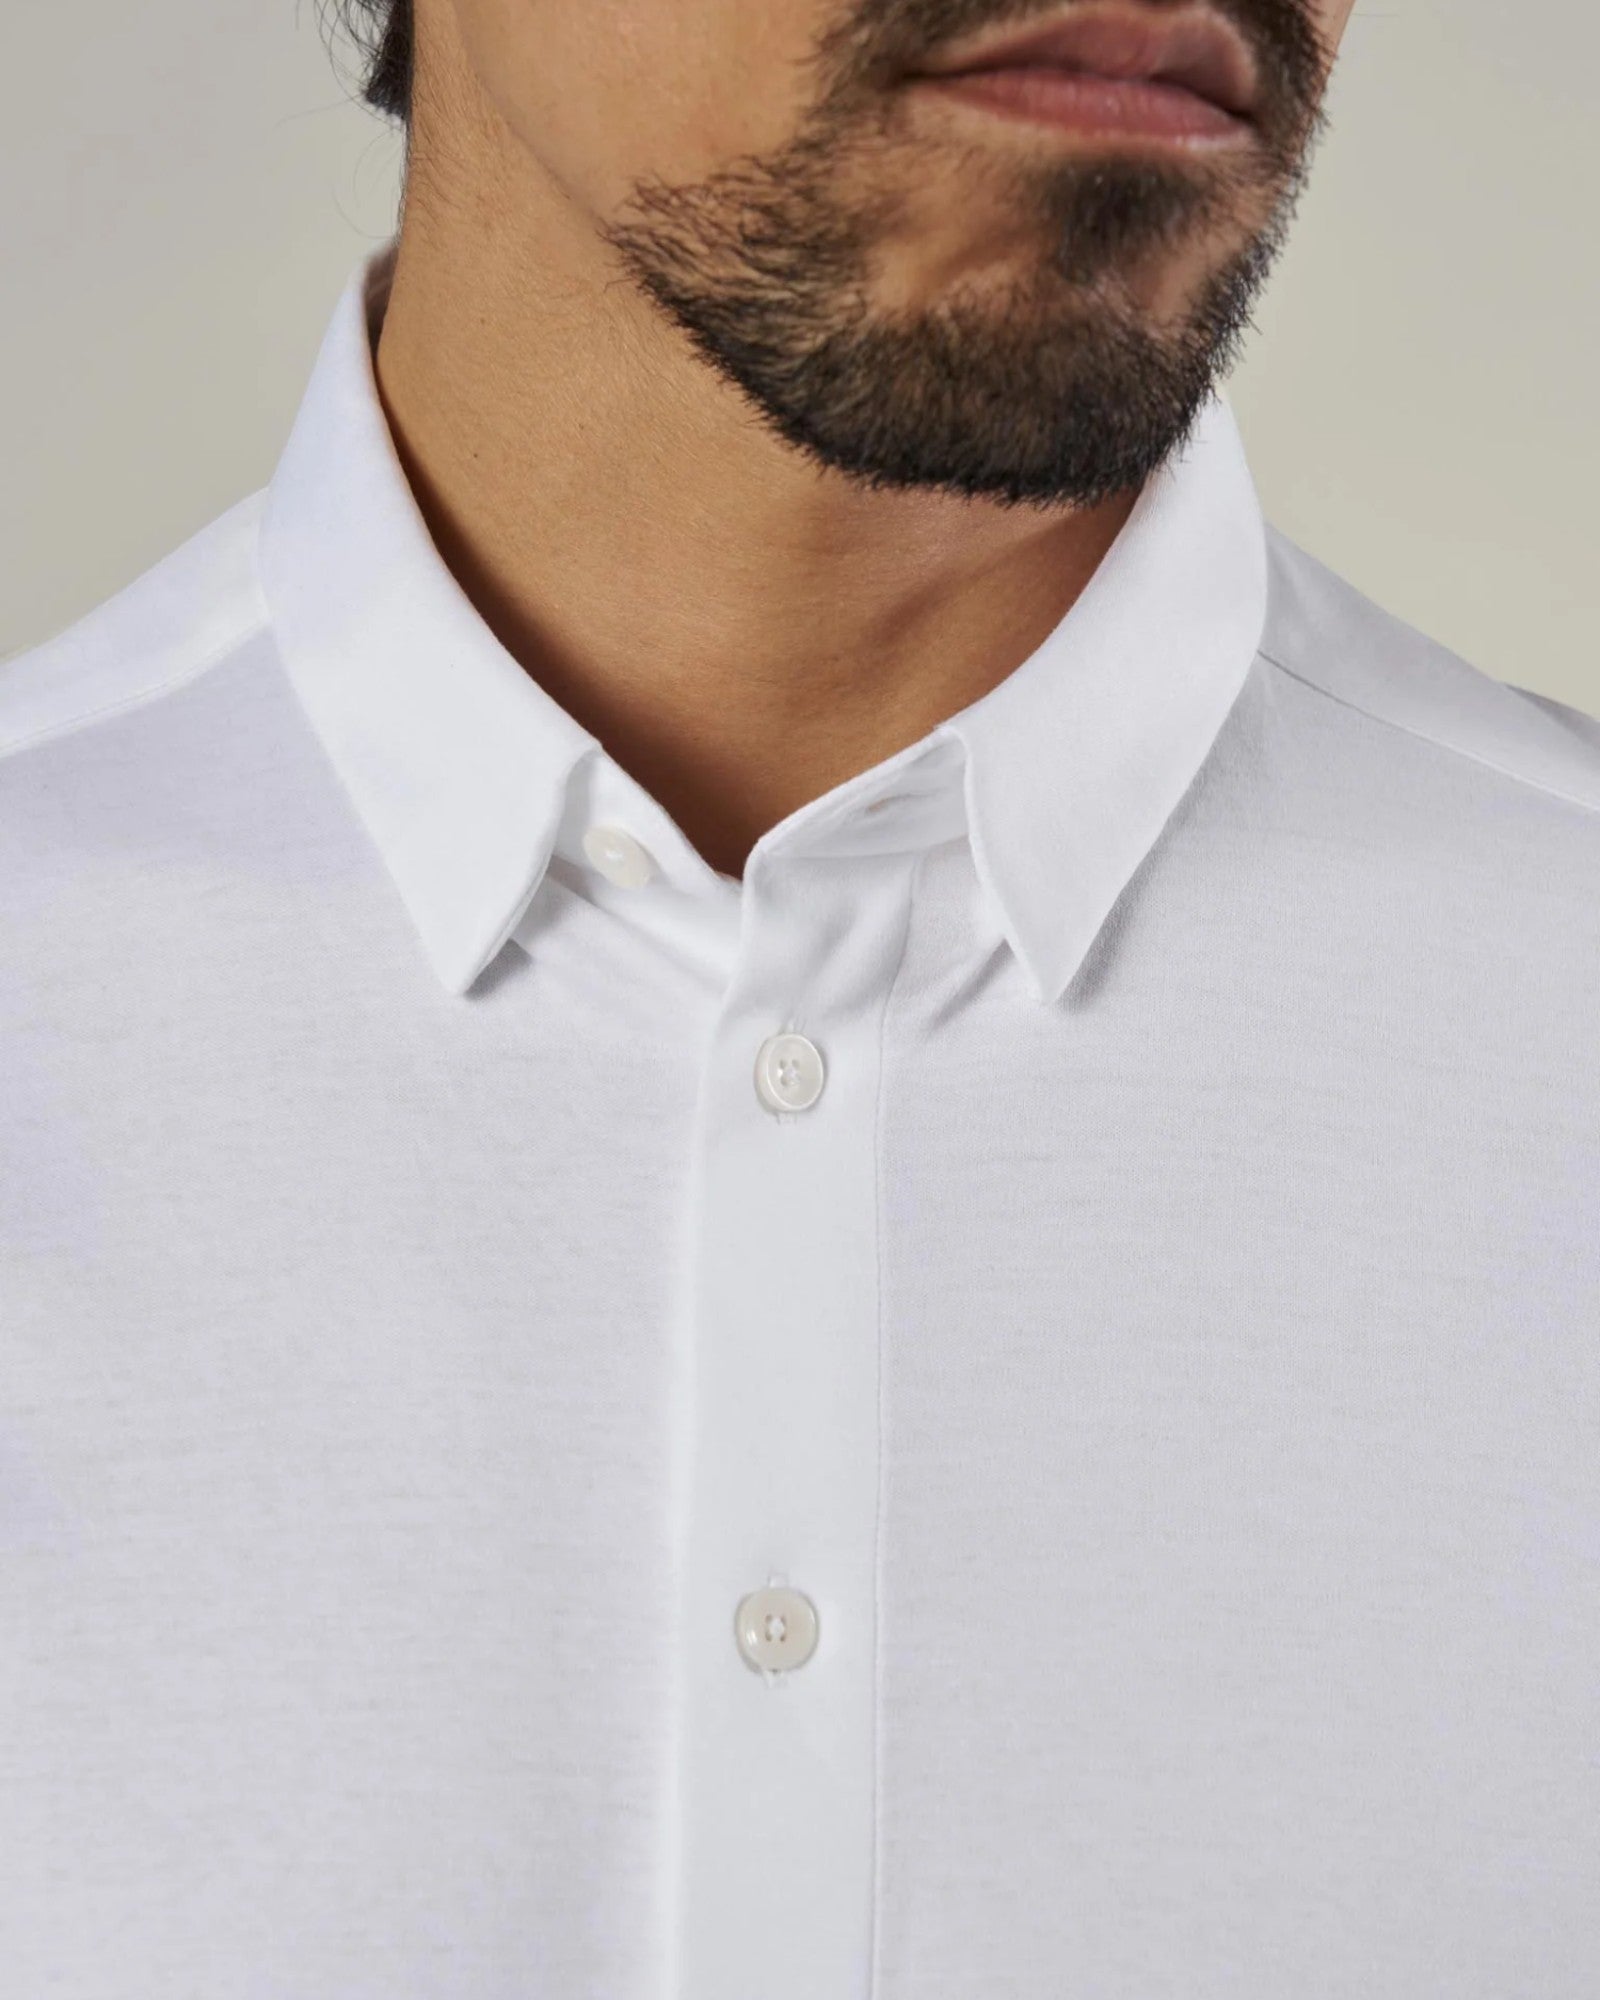 Marco Crunch Jersey Shirt White fra Mos Mosh Gallery. Langærmet hvid herre skjorte. Her set på model i closeup.